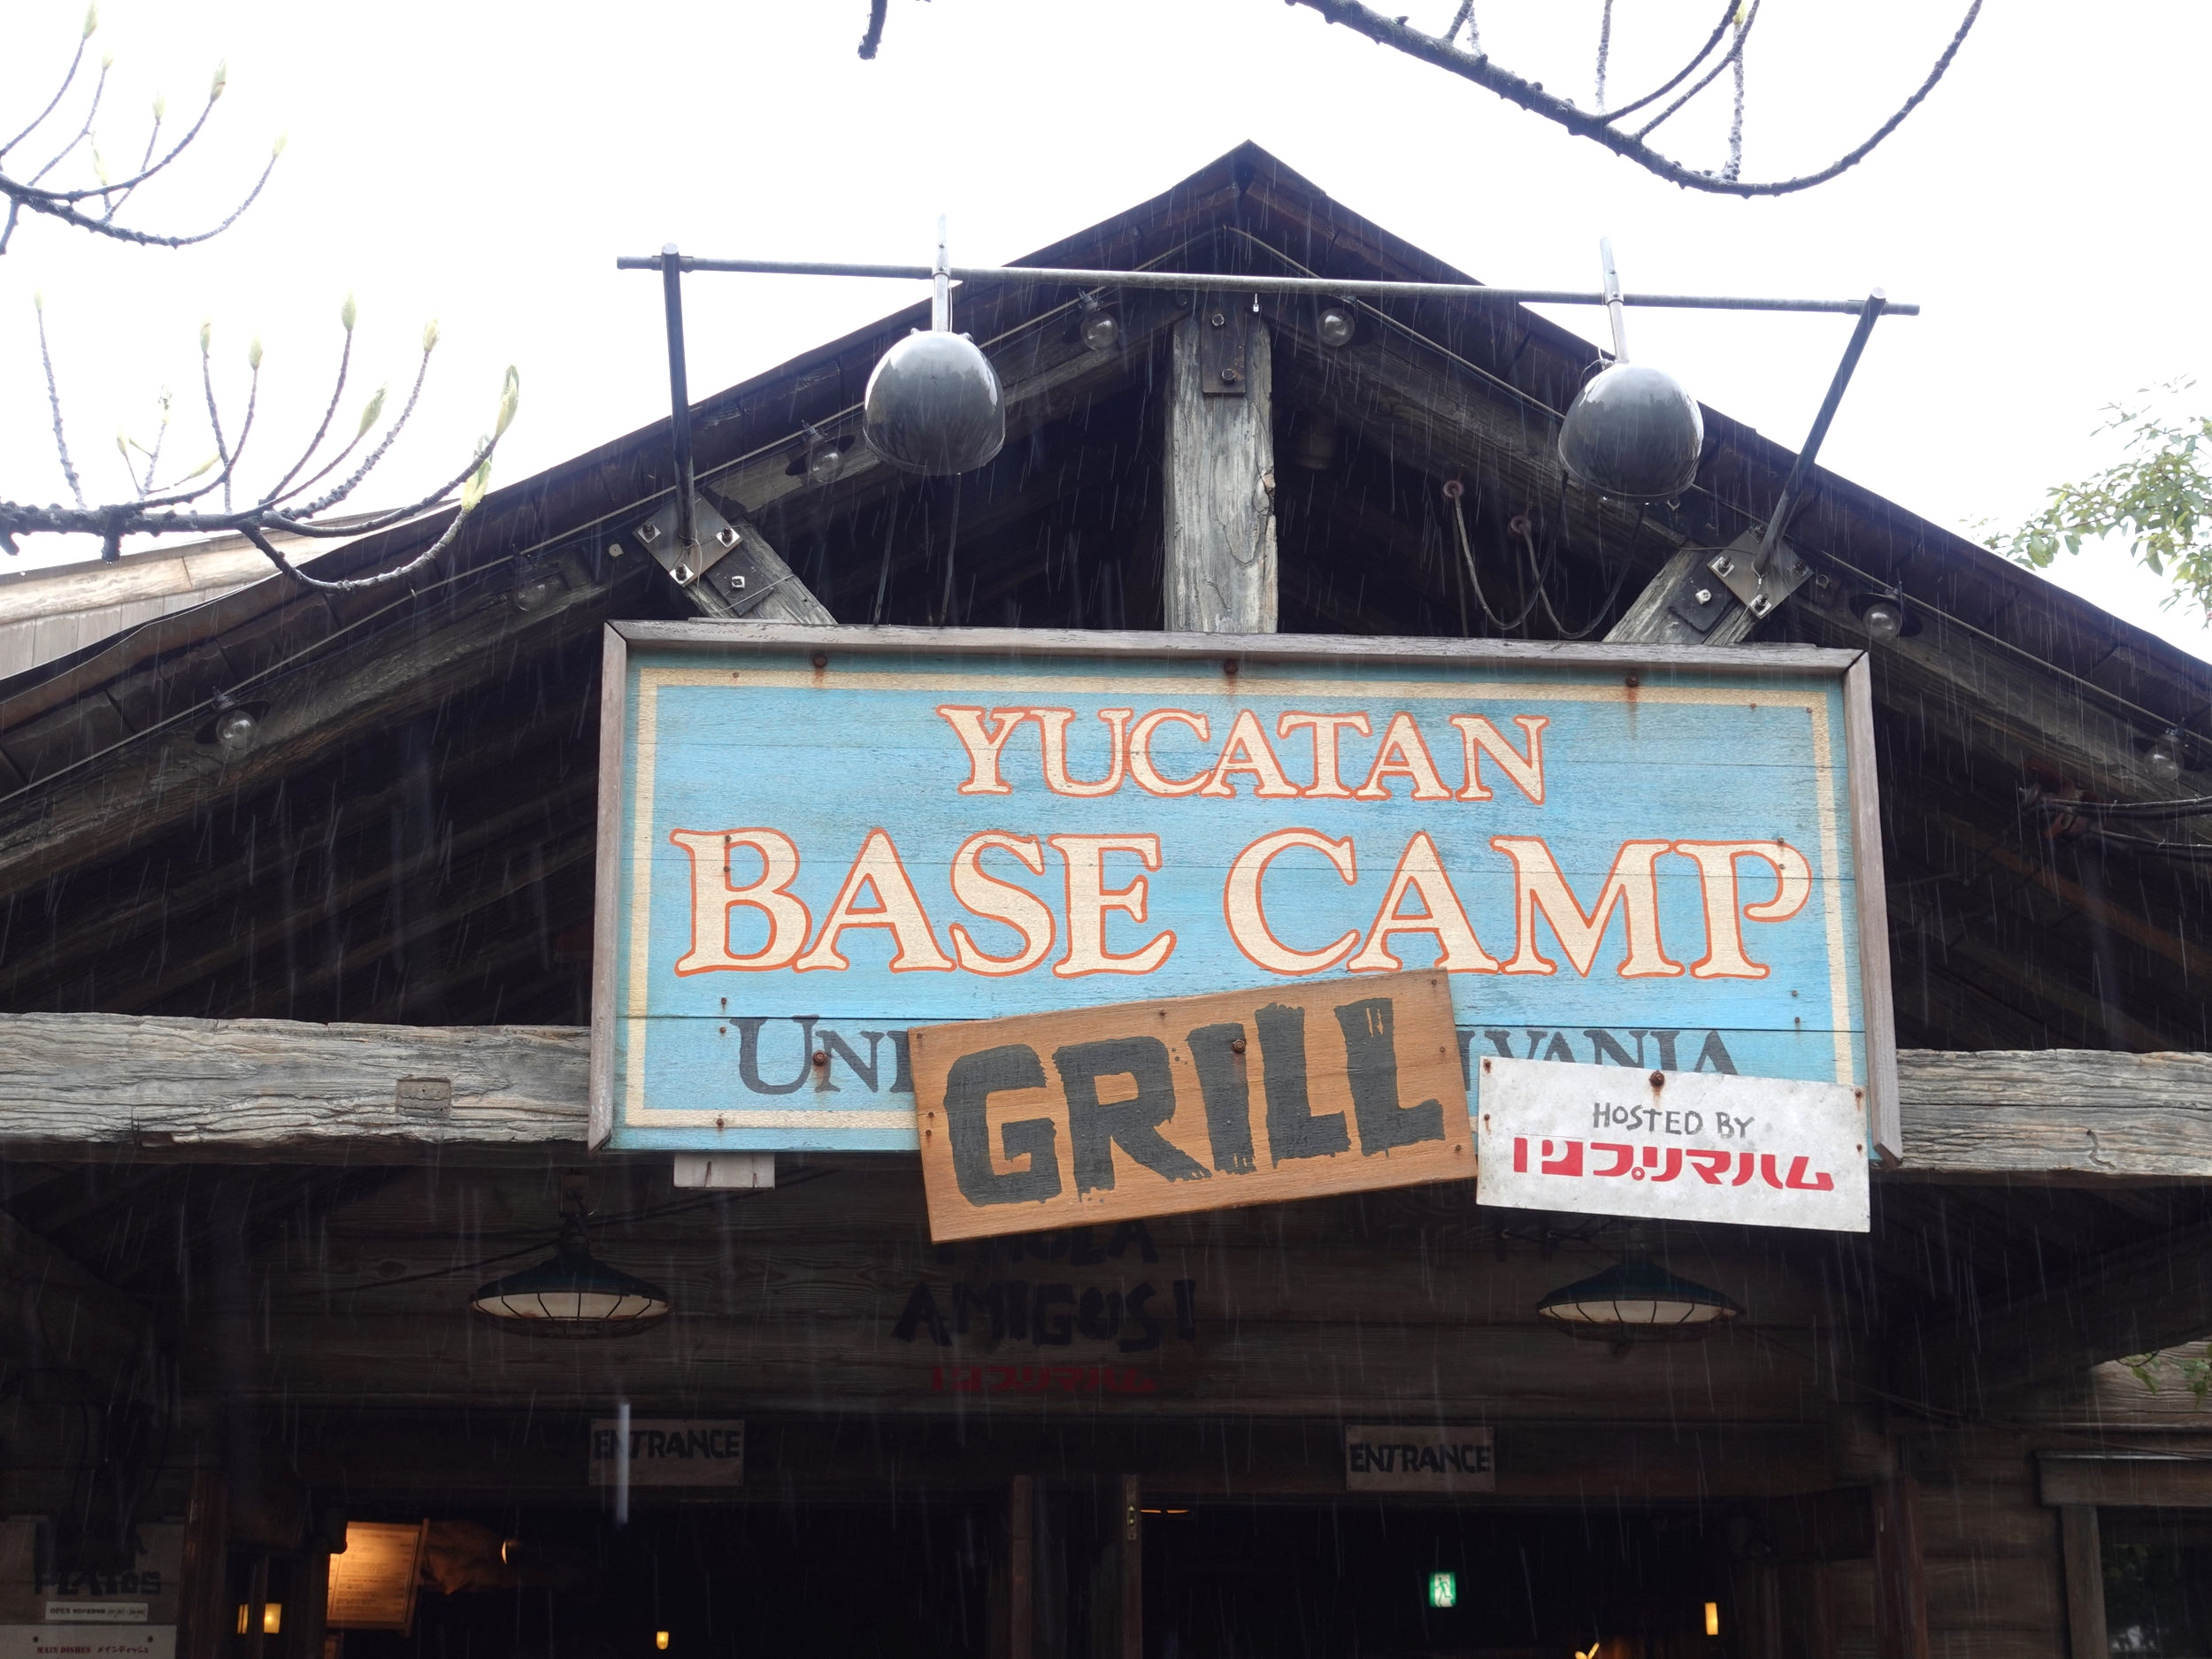 21 ユカタン ベースキャンプ グリルのメニュー 場所まとめ Tdsの穴場レストラン